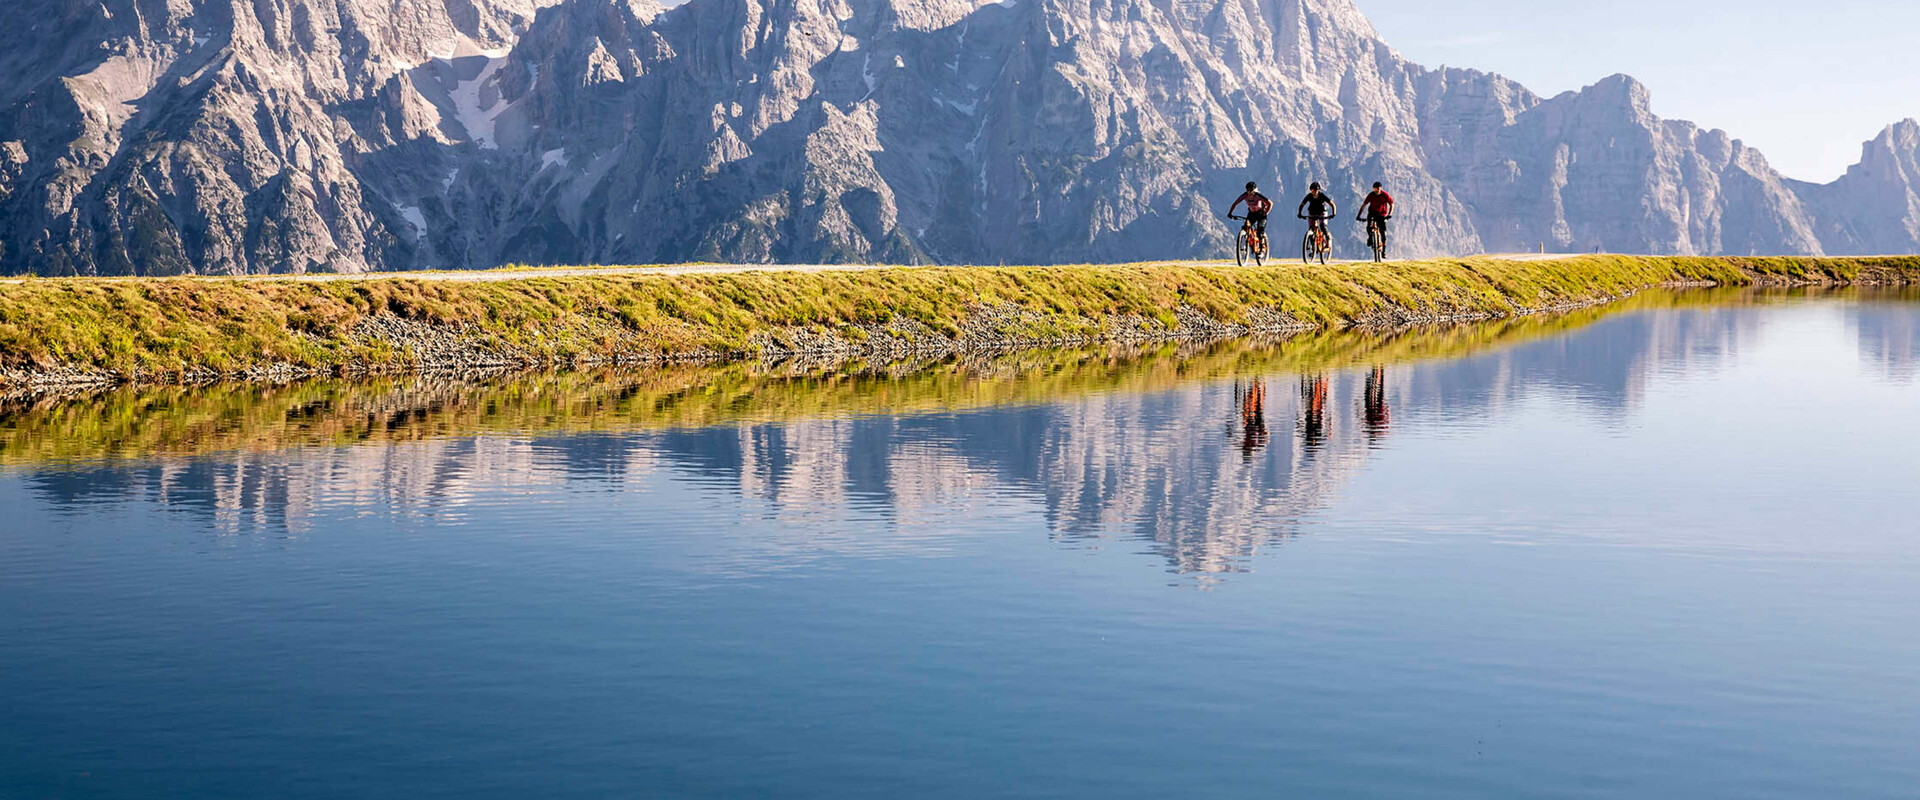 Radfahrer vor Bergkulisse spiegeln sich in See in Leogang